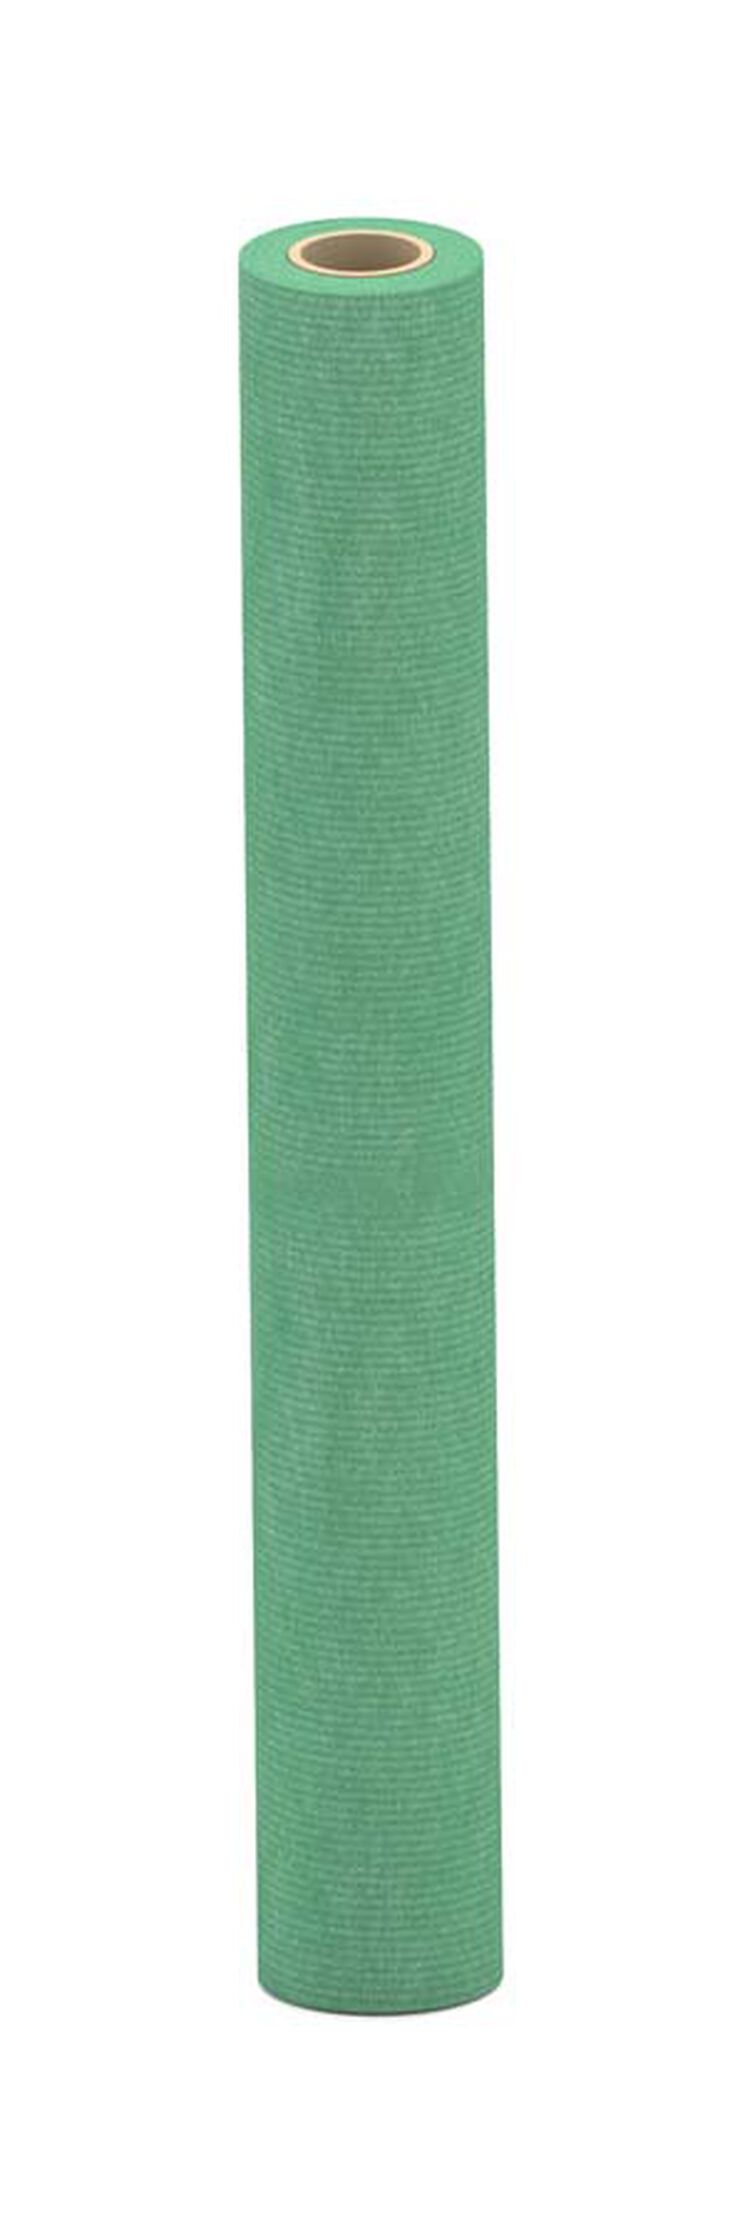 Bobina de paper kraft Sadipal 1x25m 90g verd malaquita